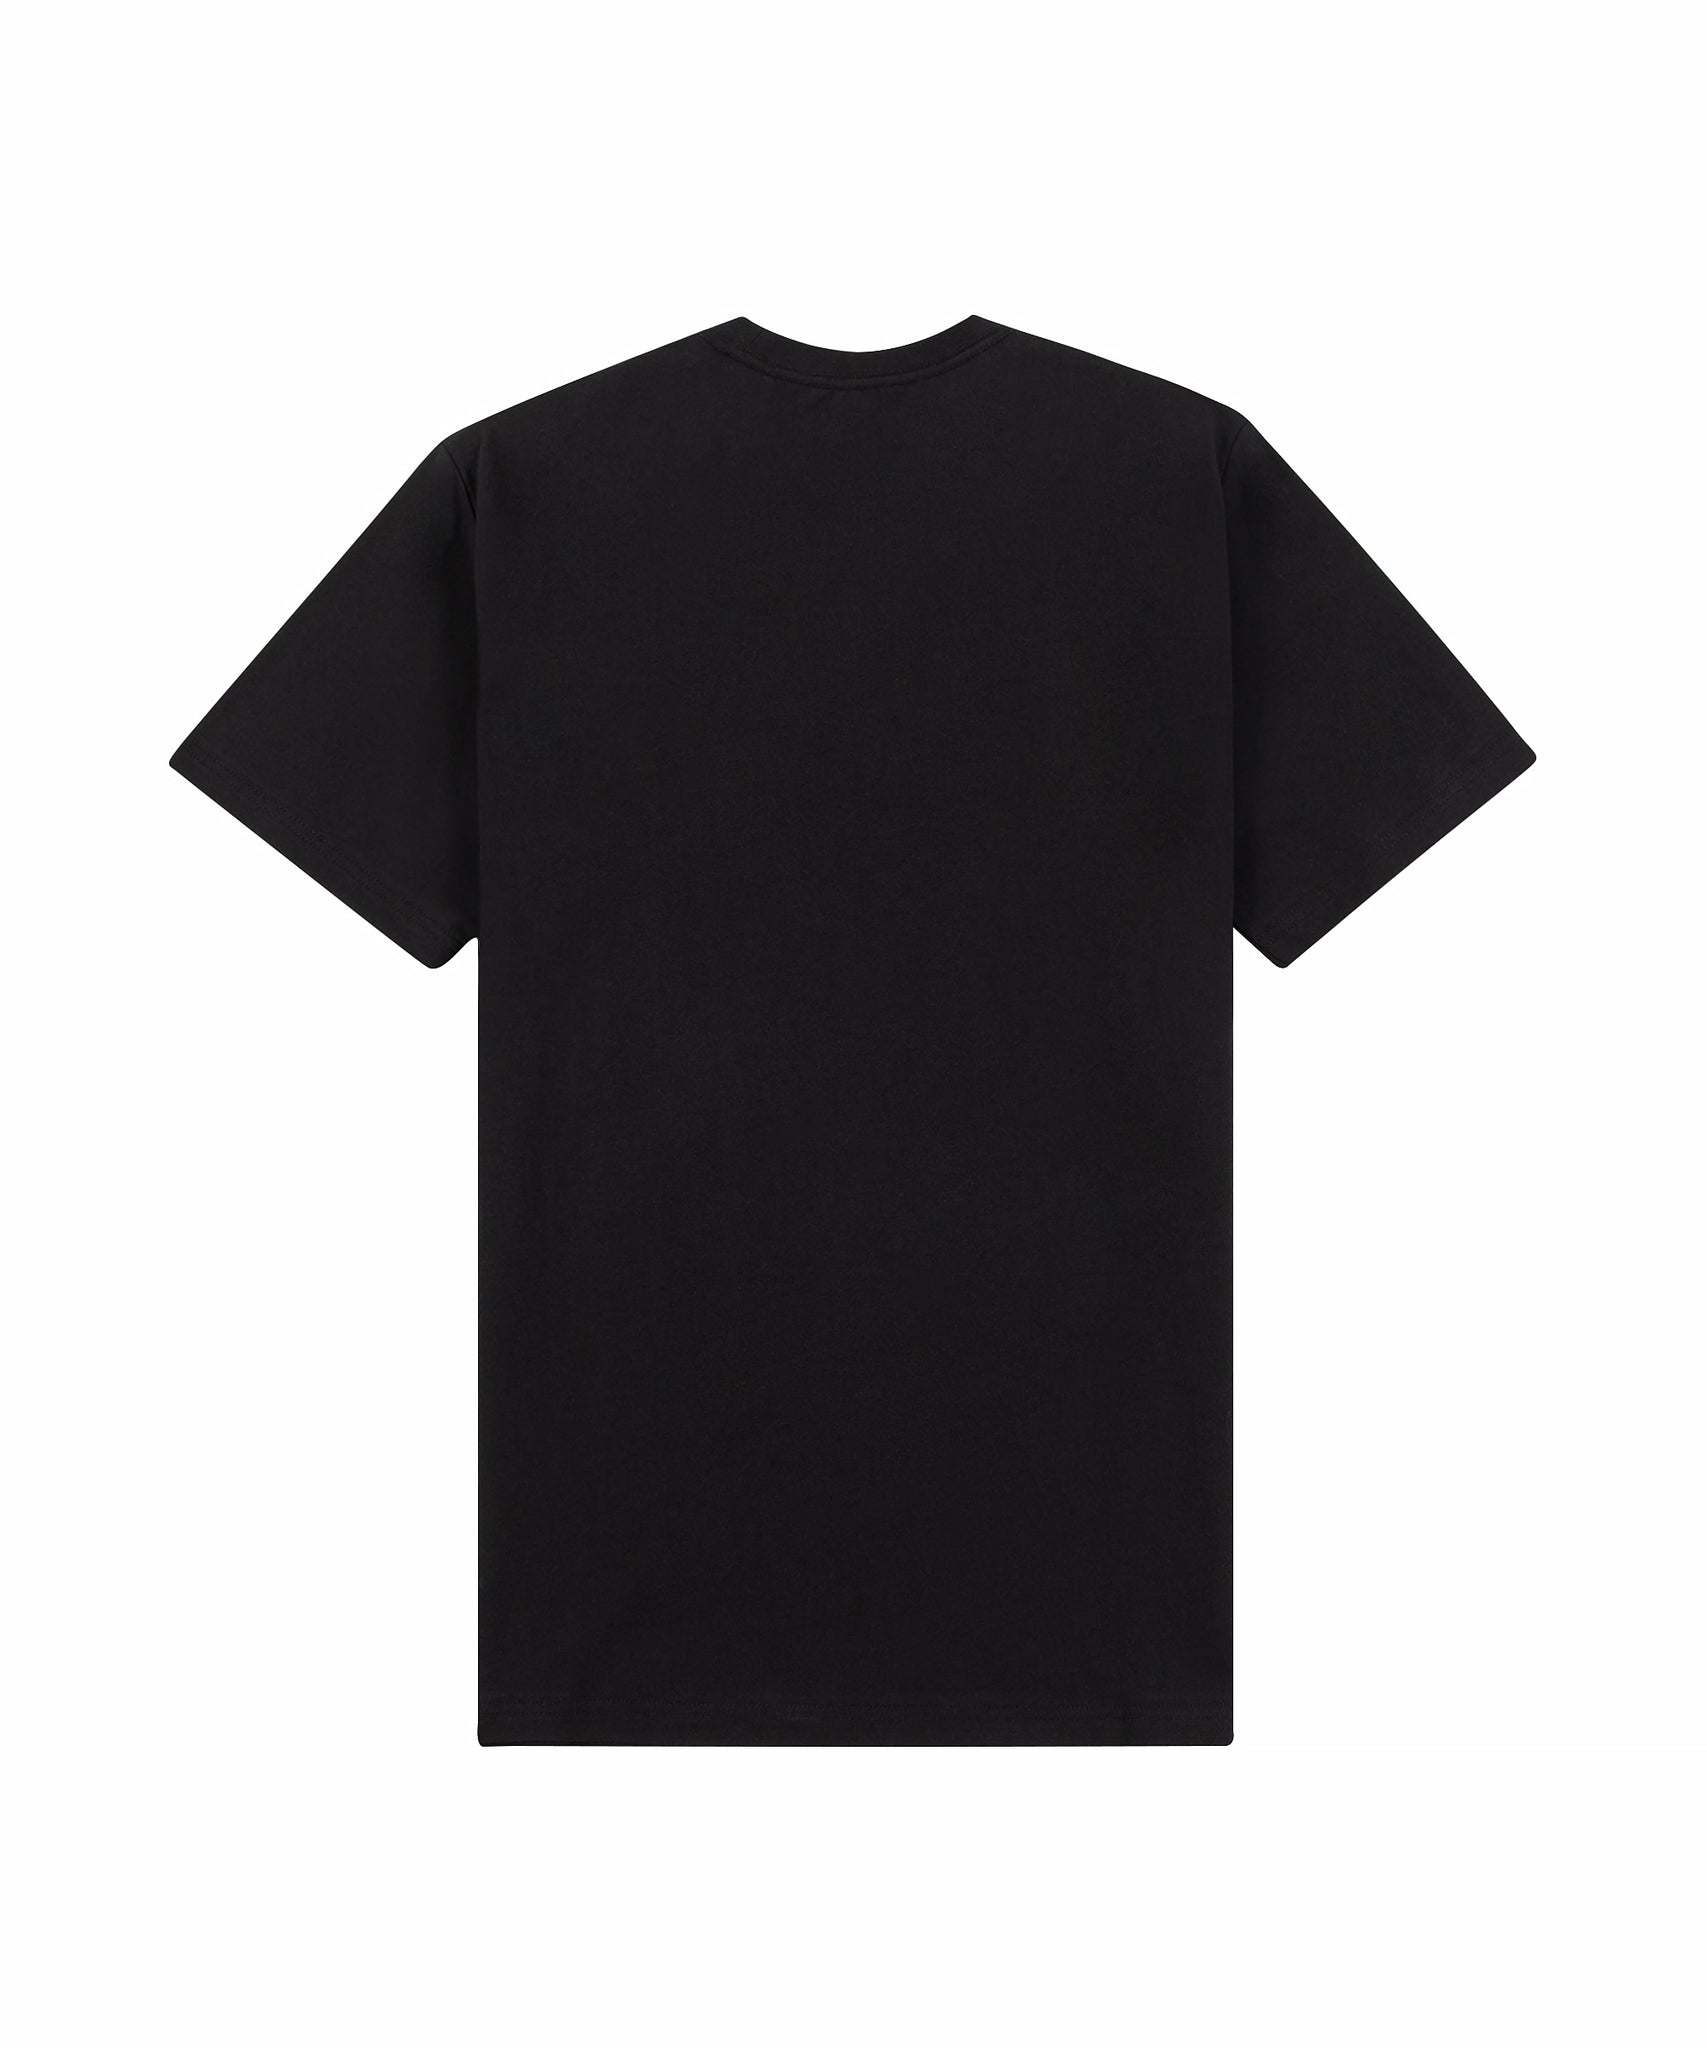 New Saucey Black T-Shirt